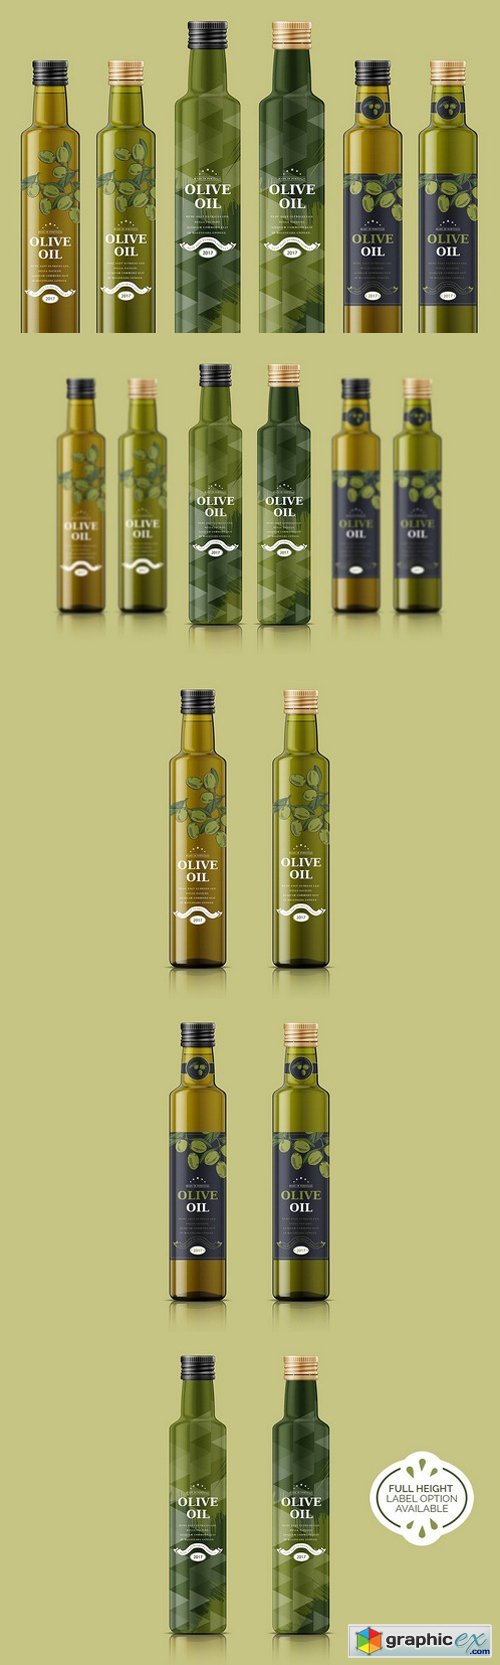 Download Olive Oil Bottle Mockup » Free Download Vector Stock Image ...